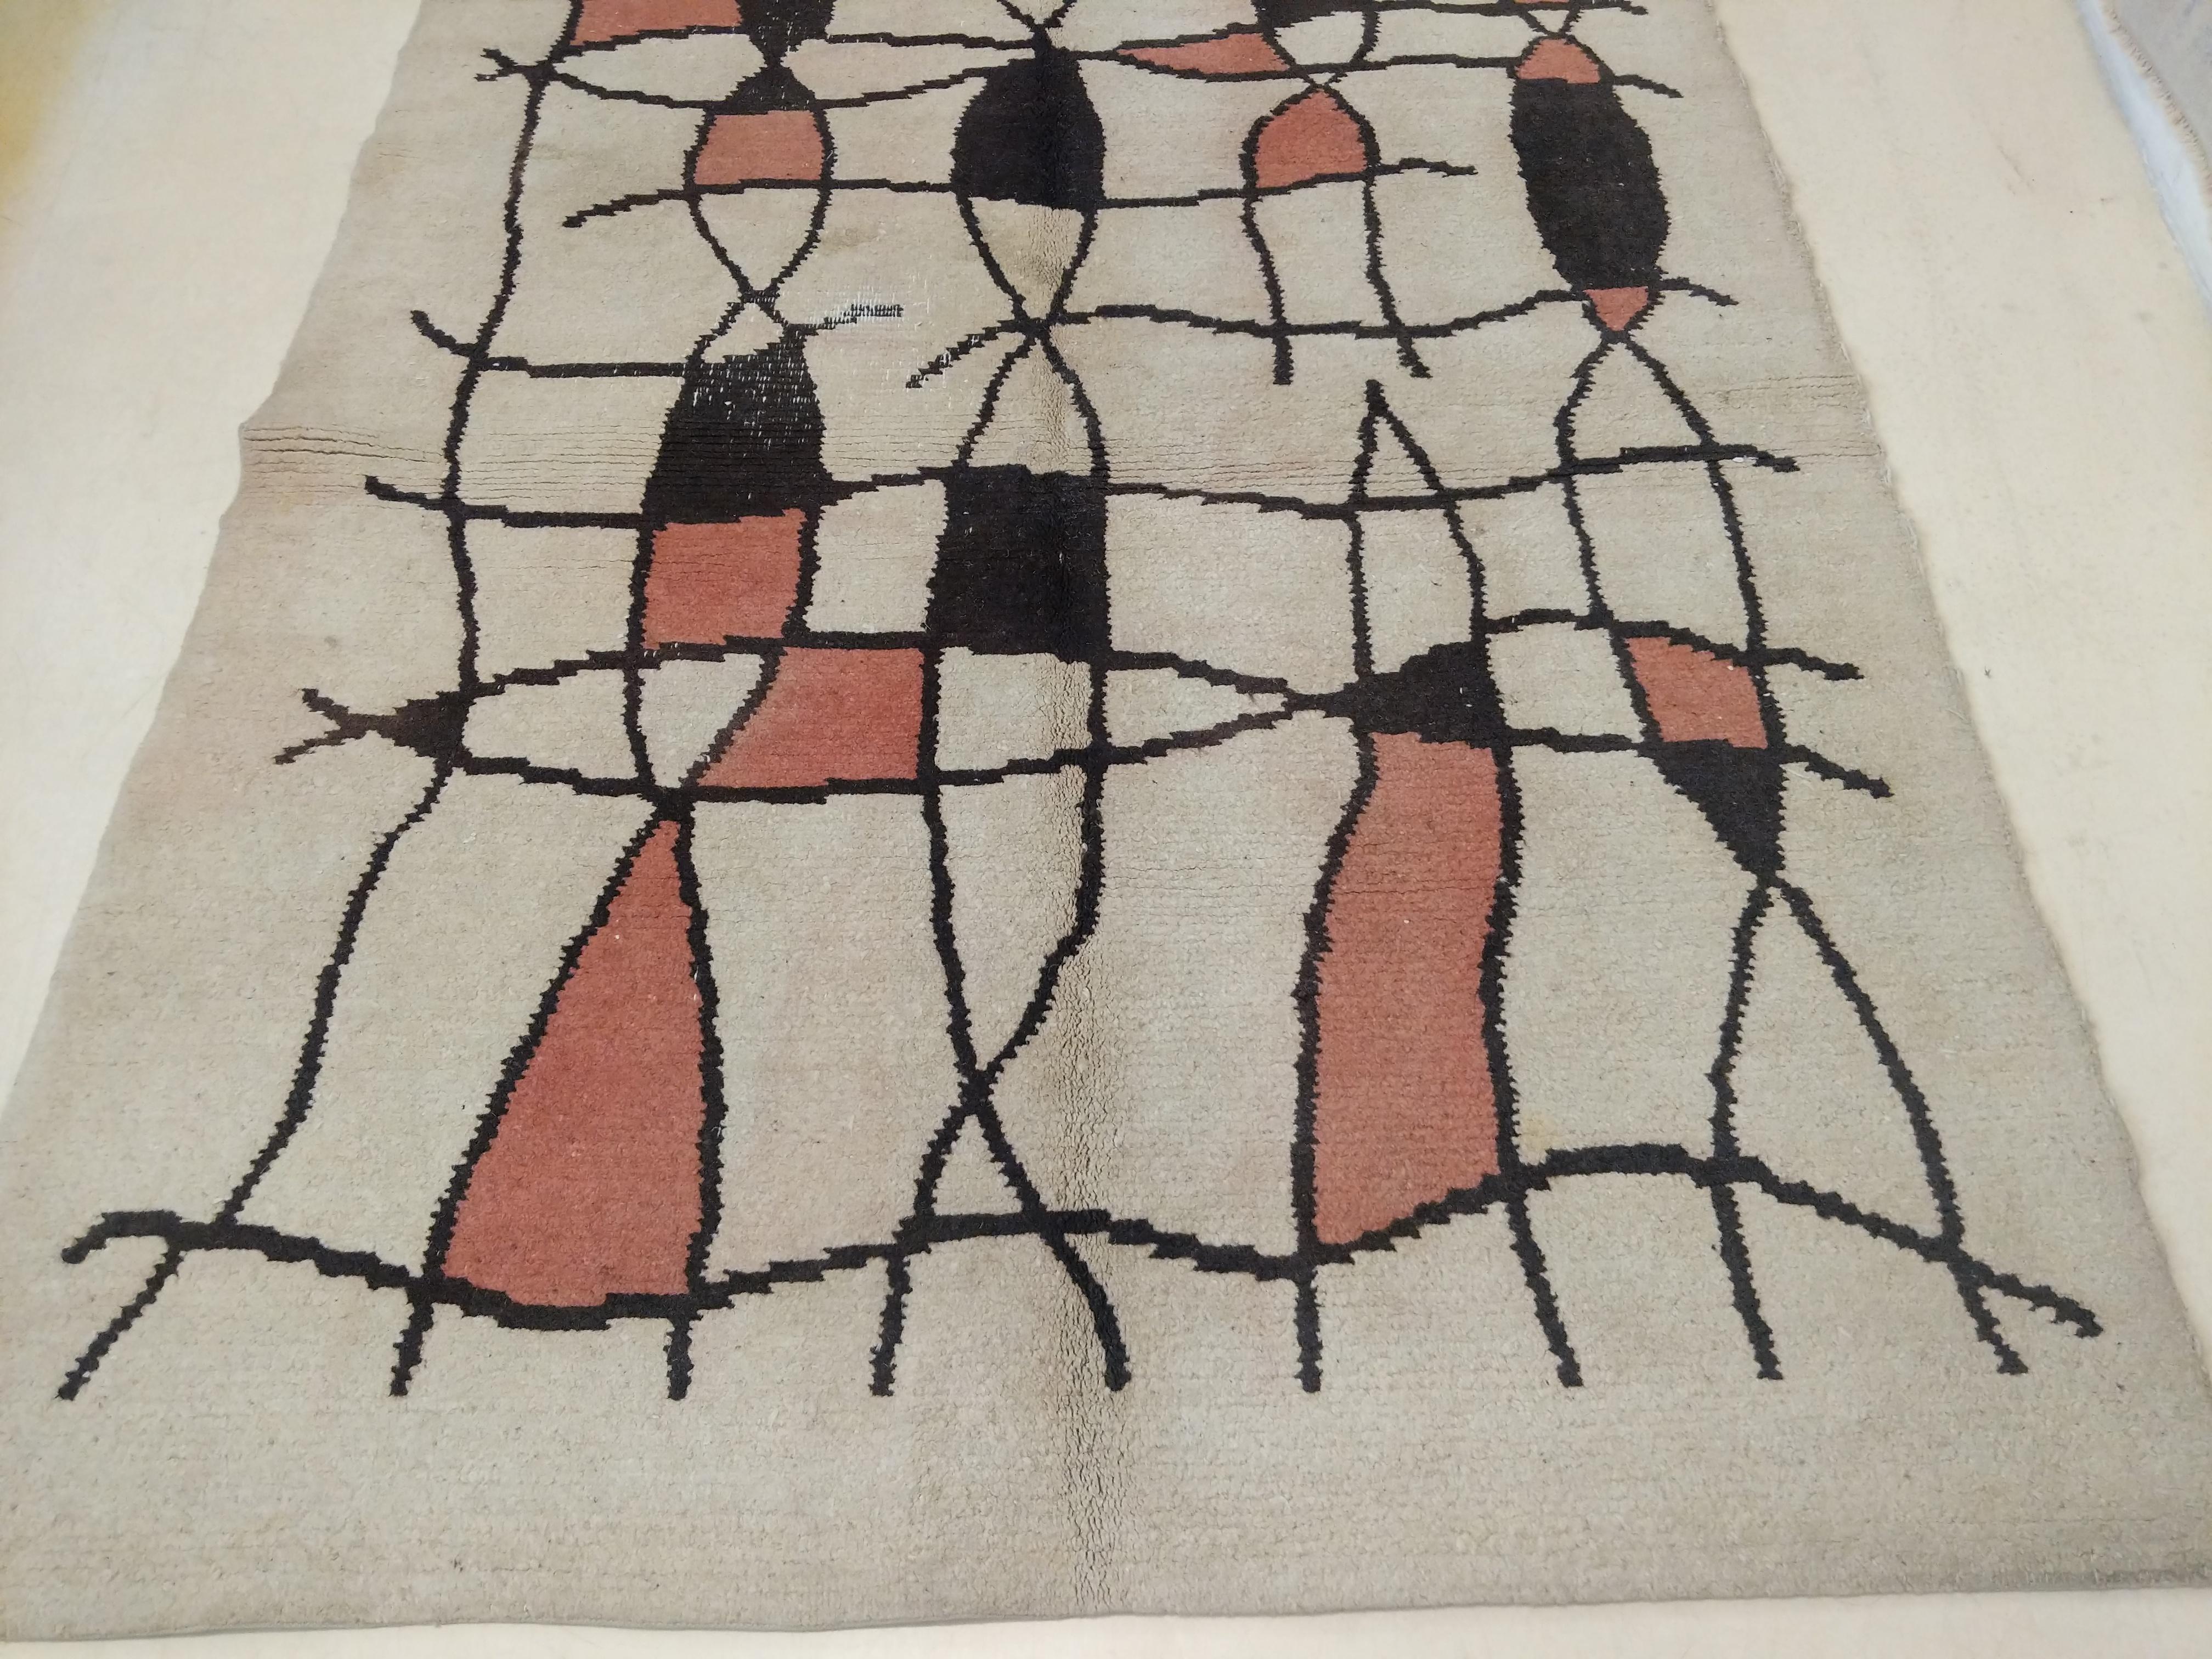 Un rare et inhabituel tapis Art Déco français qui se distingue par un motif de grille abstrait sur un fond ivoire. Les tapis de cette période ont été très fortement influencés par les mouvements artistiques d'avant-garde qui se produisaient à Paris,